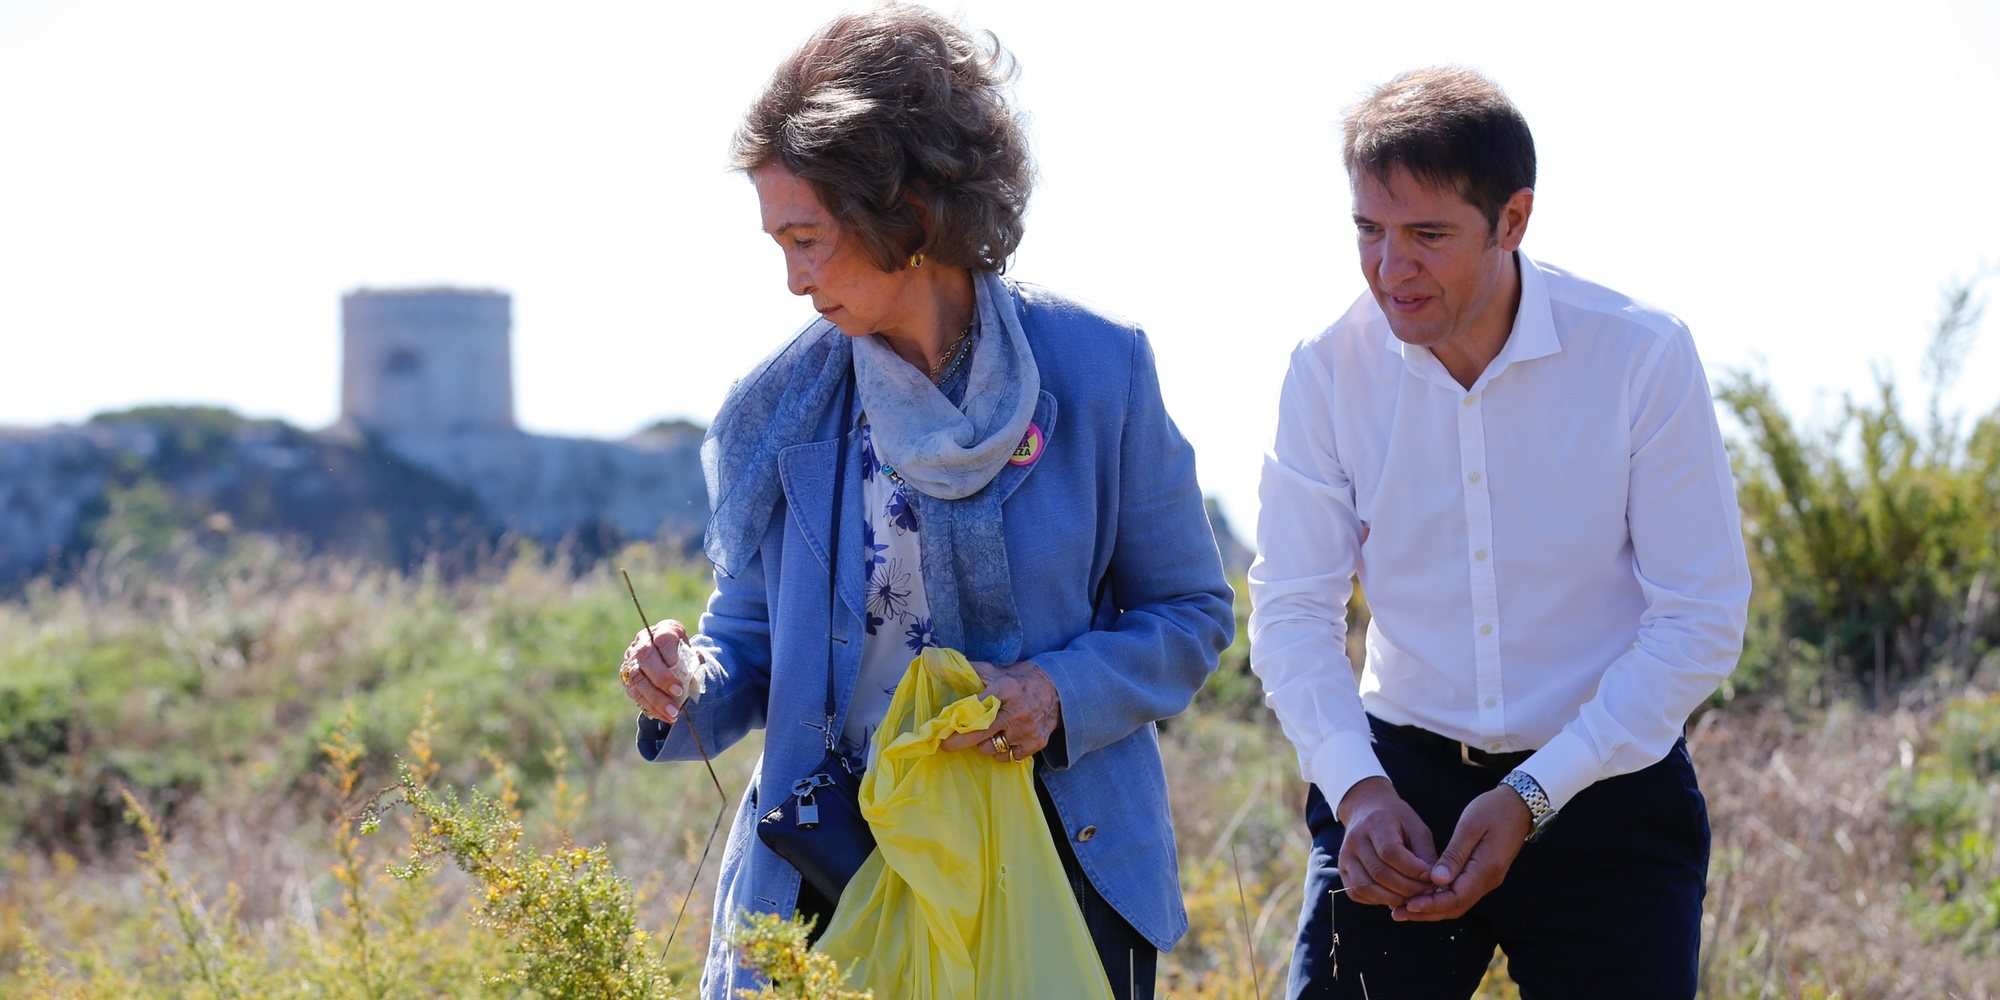 La Reina Sofía recoge basura marina en Menorca para concienciar sobre el grave problema medioambiental